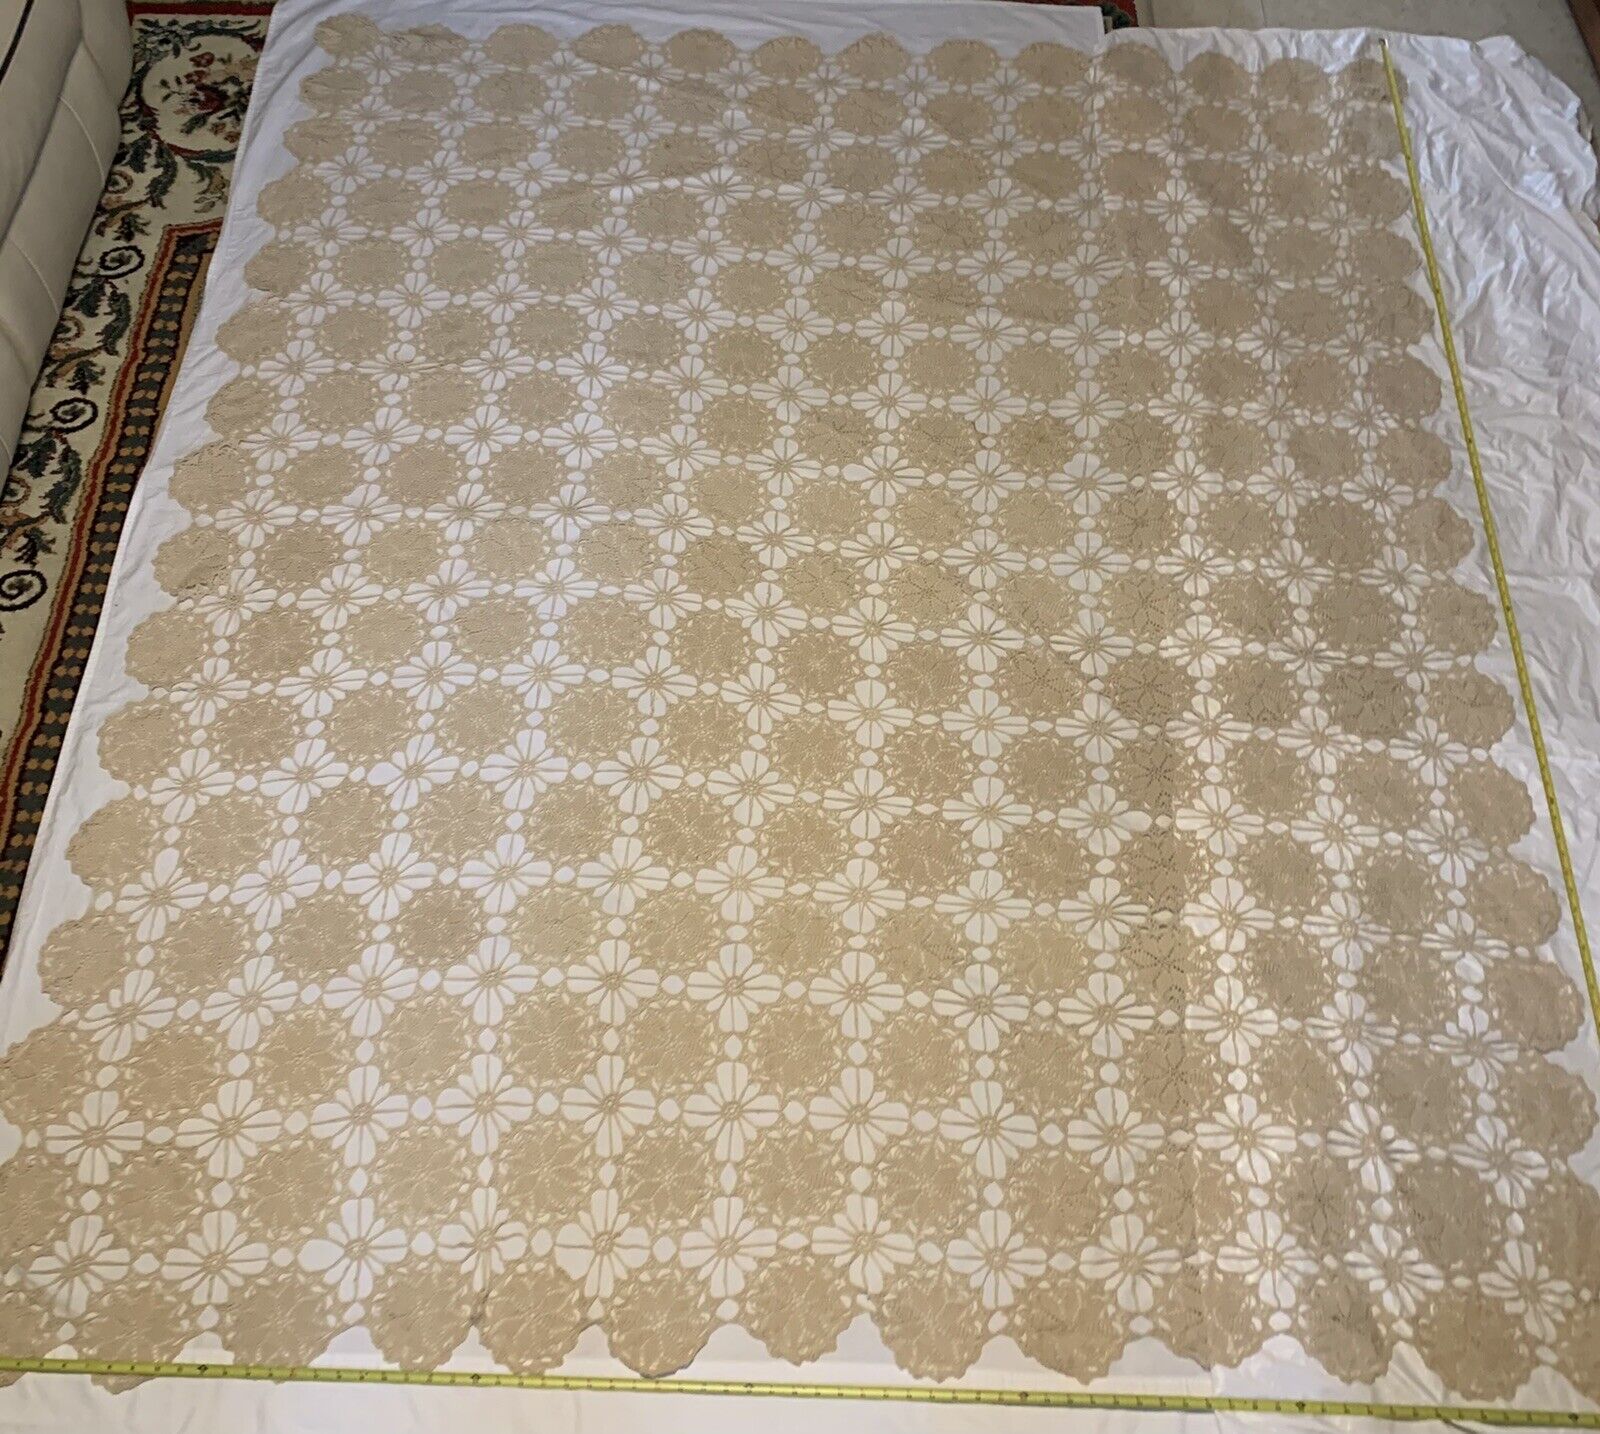 VTG Handmade Crochet Bedspread Beigh 89”x77”Beautiful